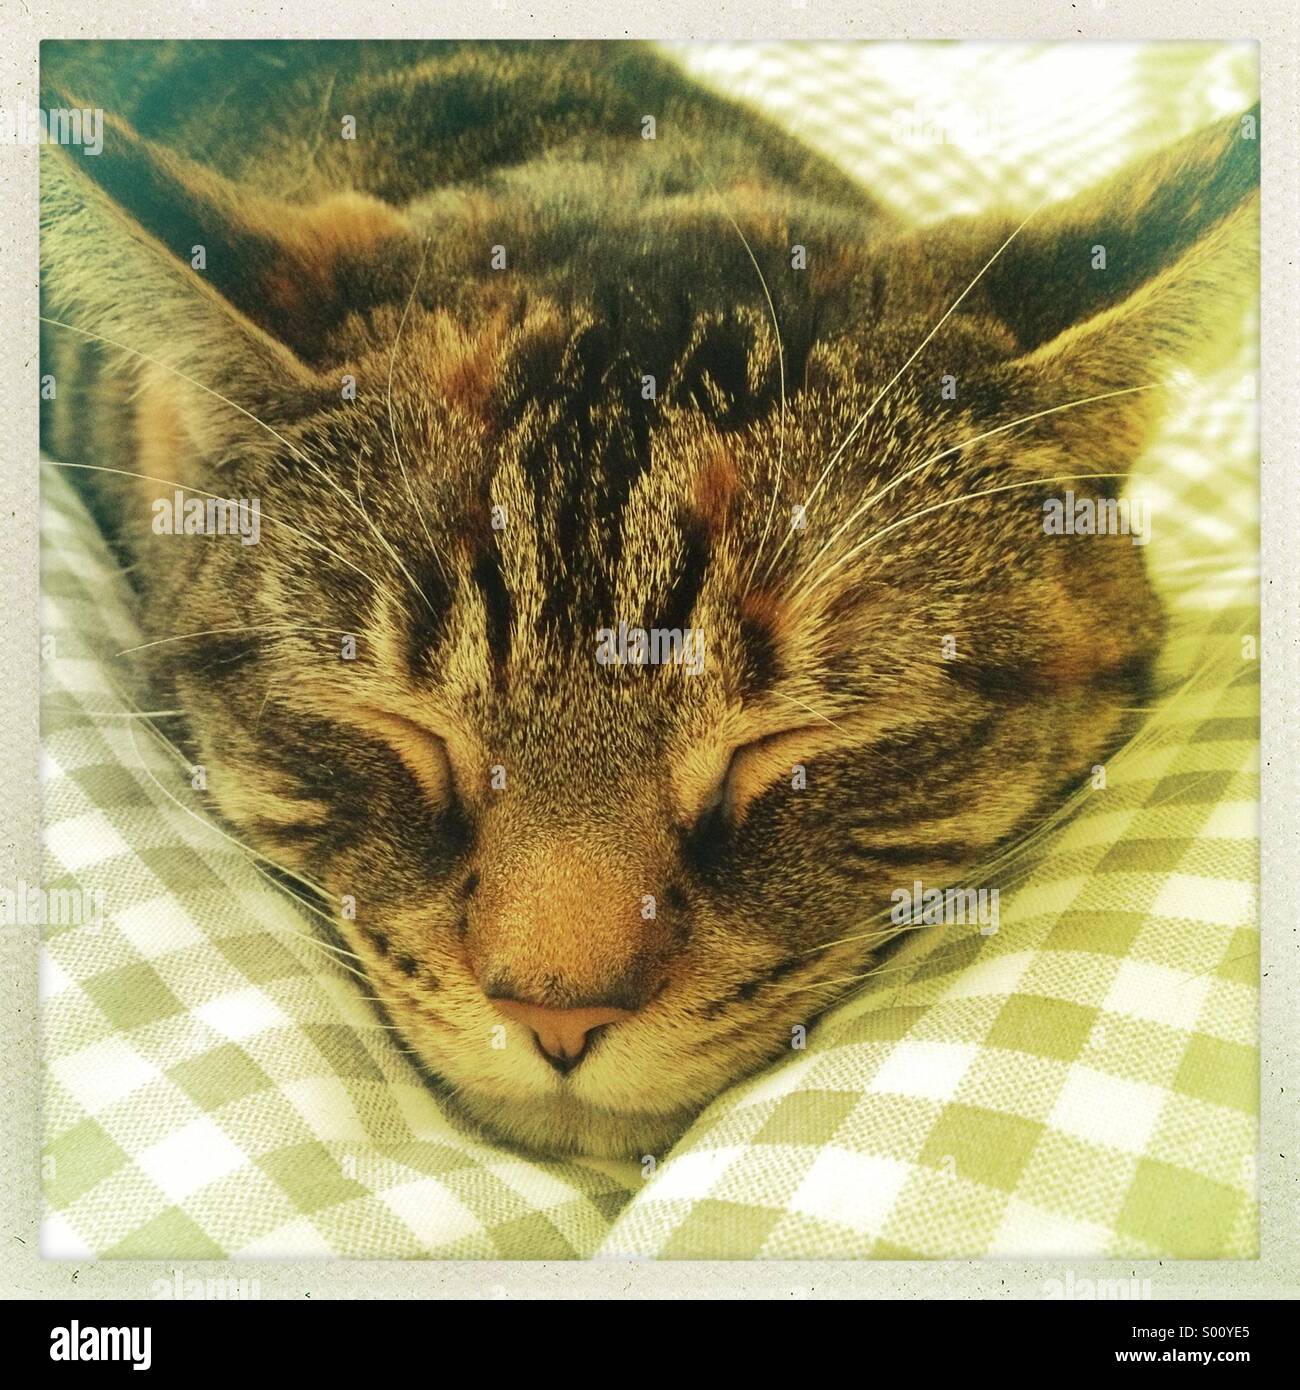 Dormir gato atigrado Foto de stock